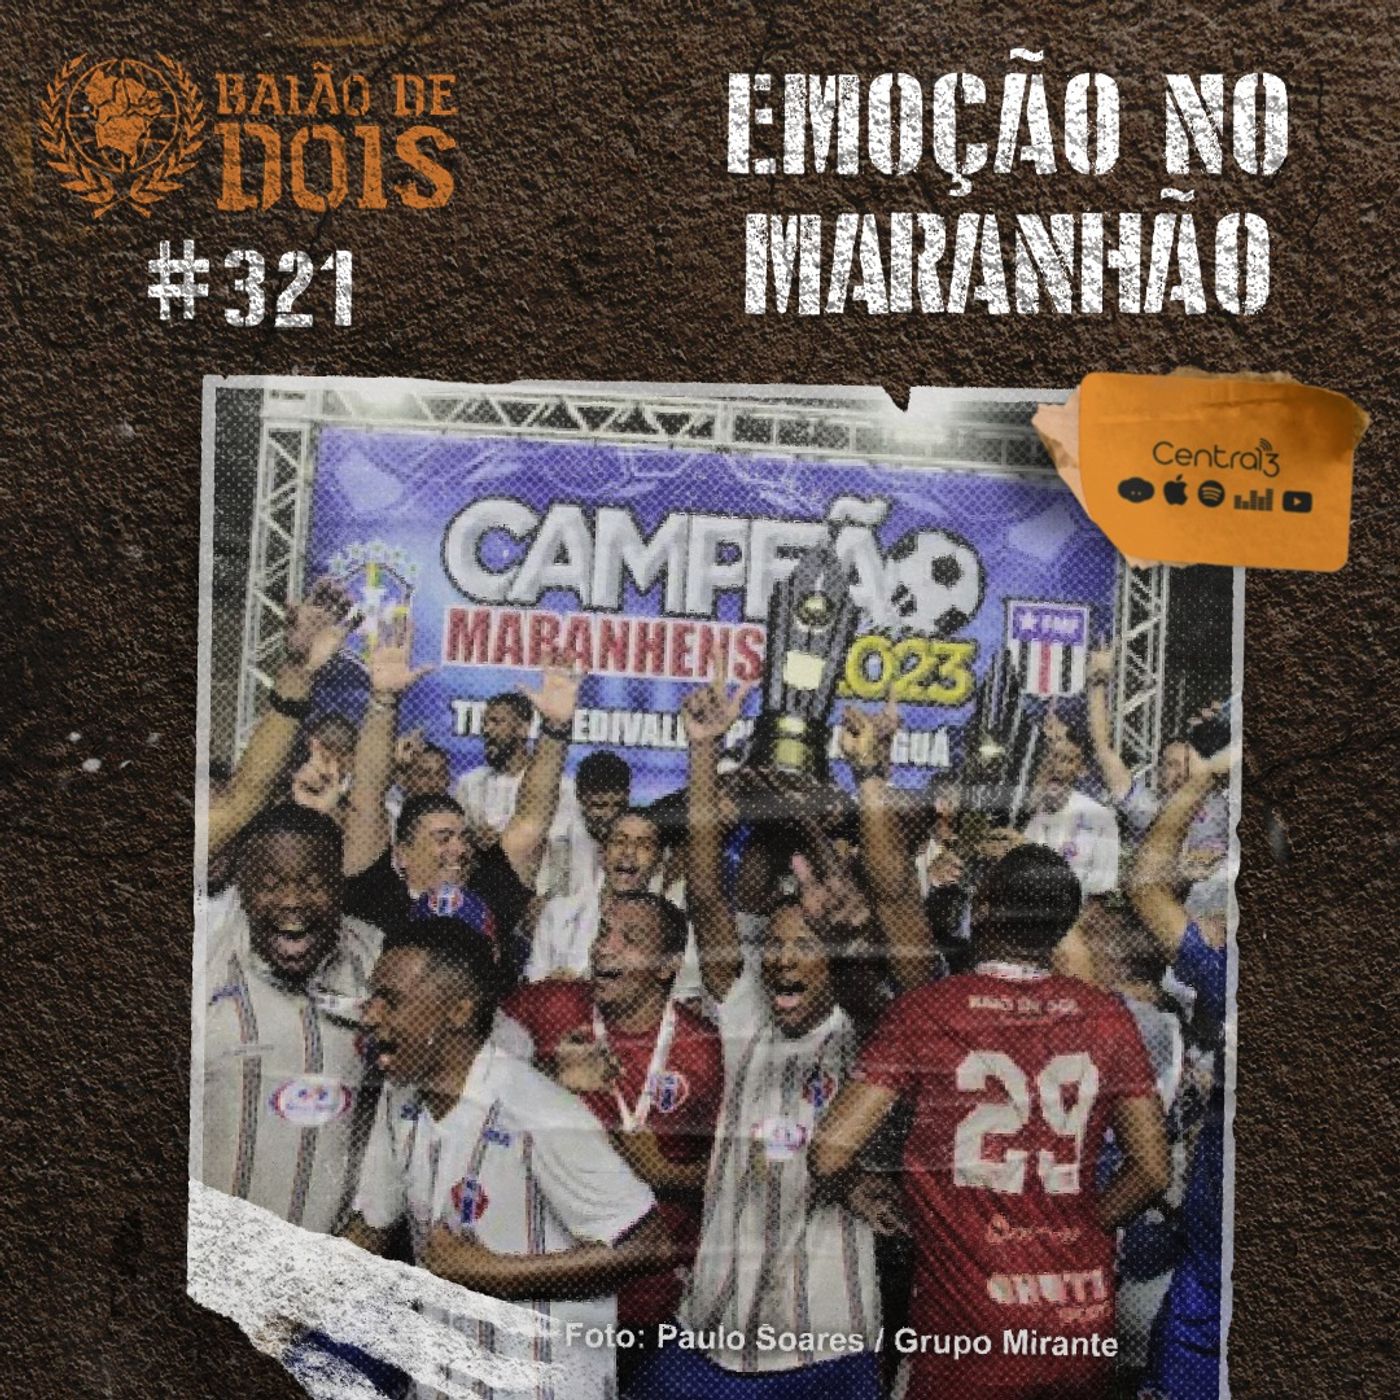 #321 - Emoção no Maranhão